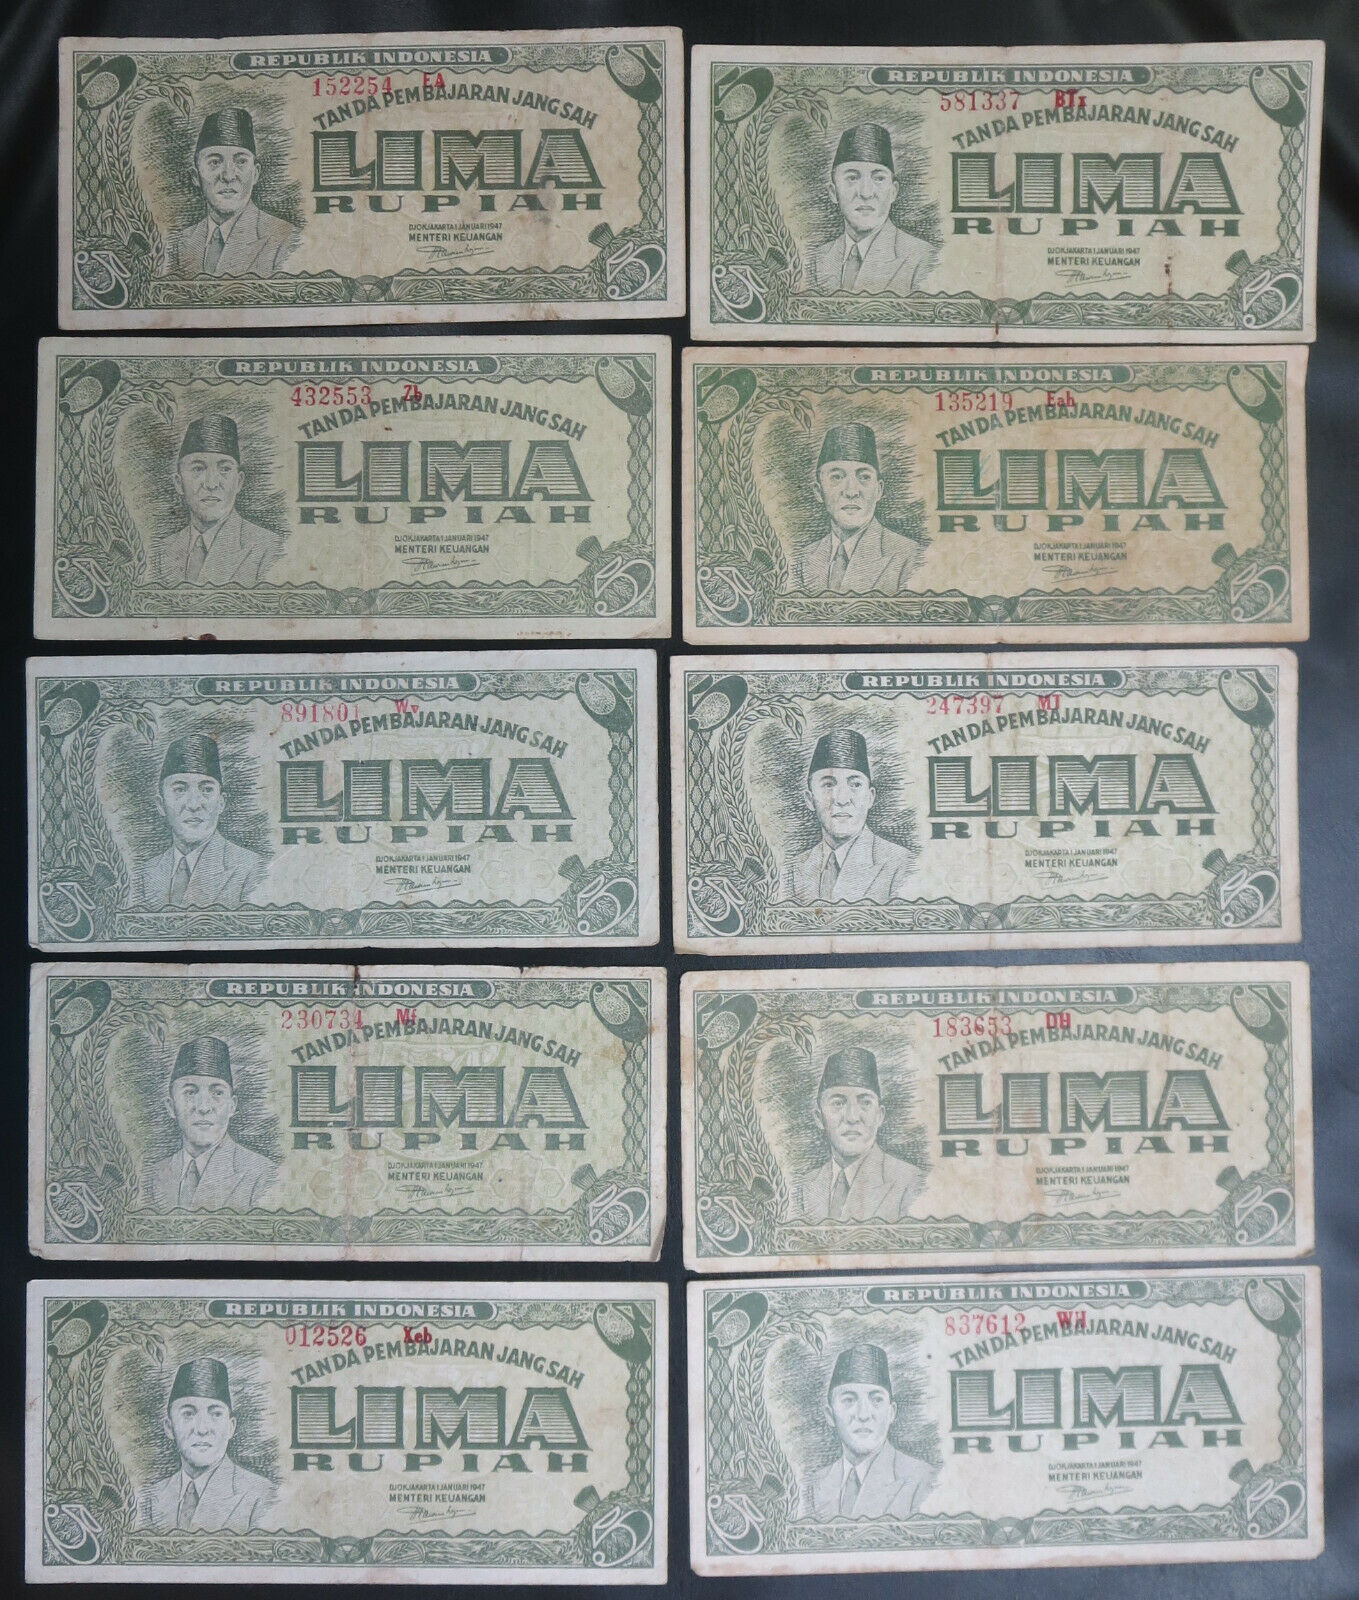 10 Indonesia 5 five rupiah 1947 Banknotes Soekarno Sukarno first series Jakarta